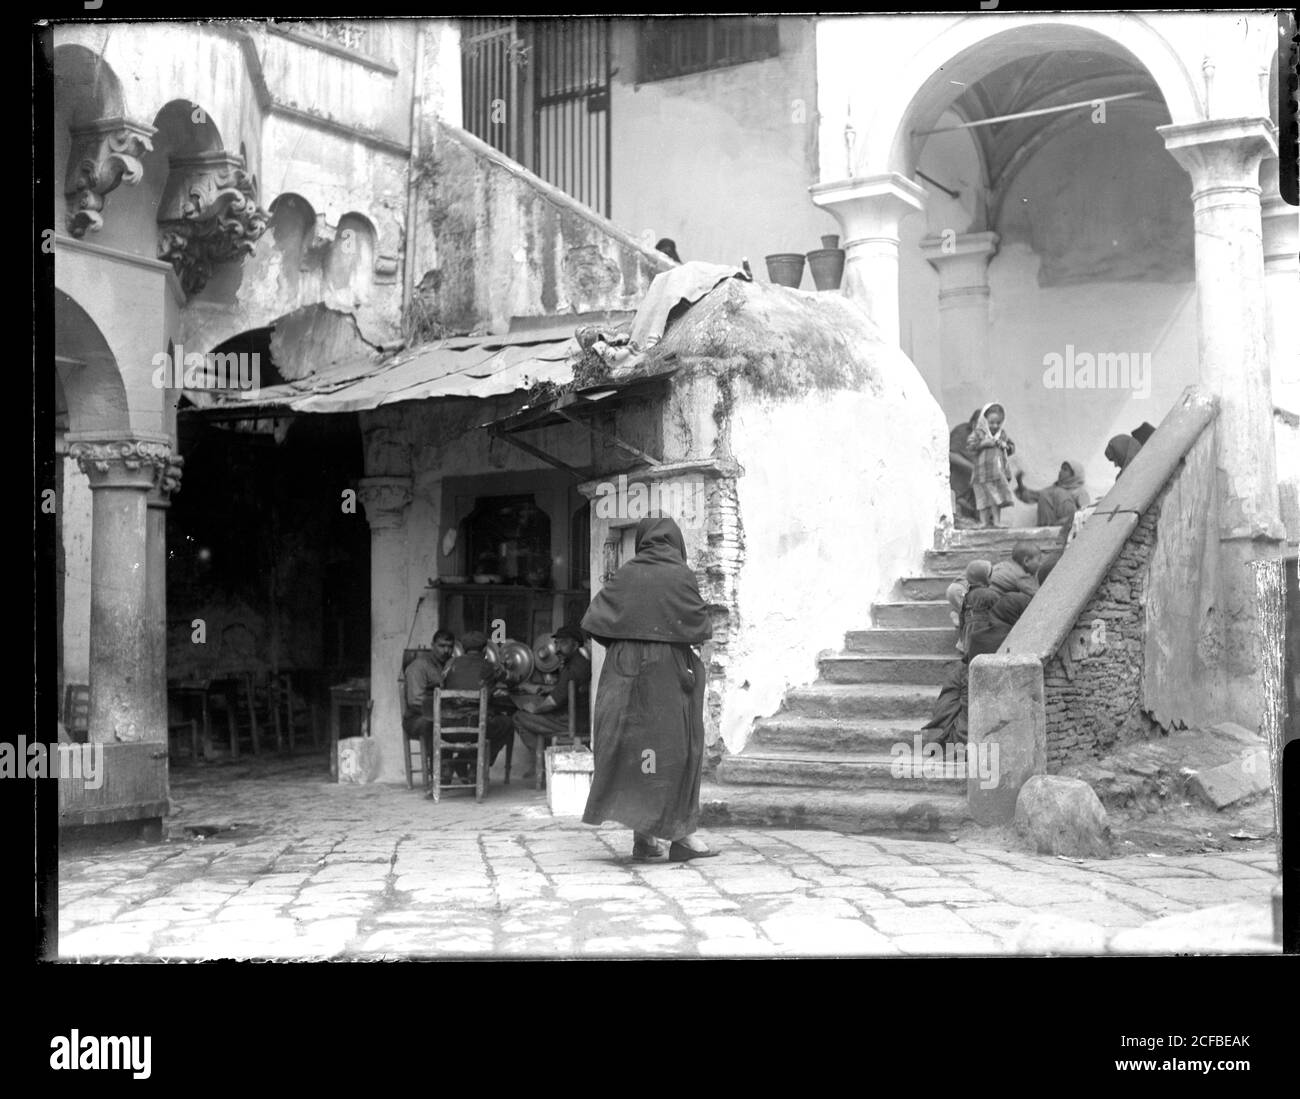 Şadırvan Camii Konak in Smyrna / Izmir, Türkei. Drei Männer sitzen auf Stühlen reden oder spielen, Menge spielender Kinder. Fotografie auf trockenem Glasplatte aus der Sammlung Herry W. Schaefer, um 1910. Stockfoto